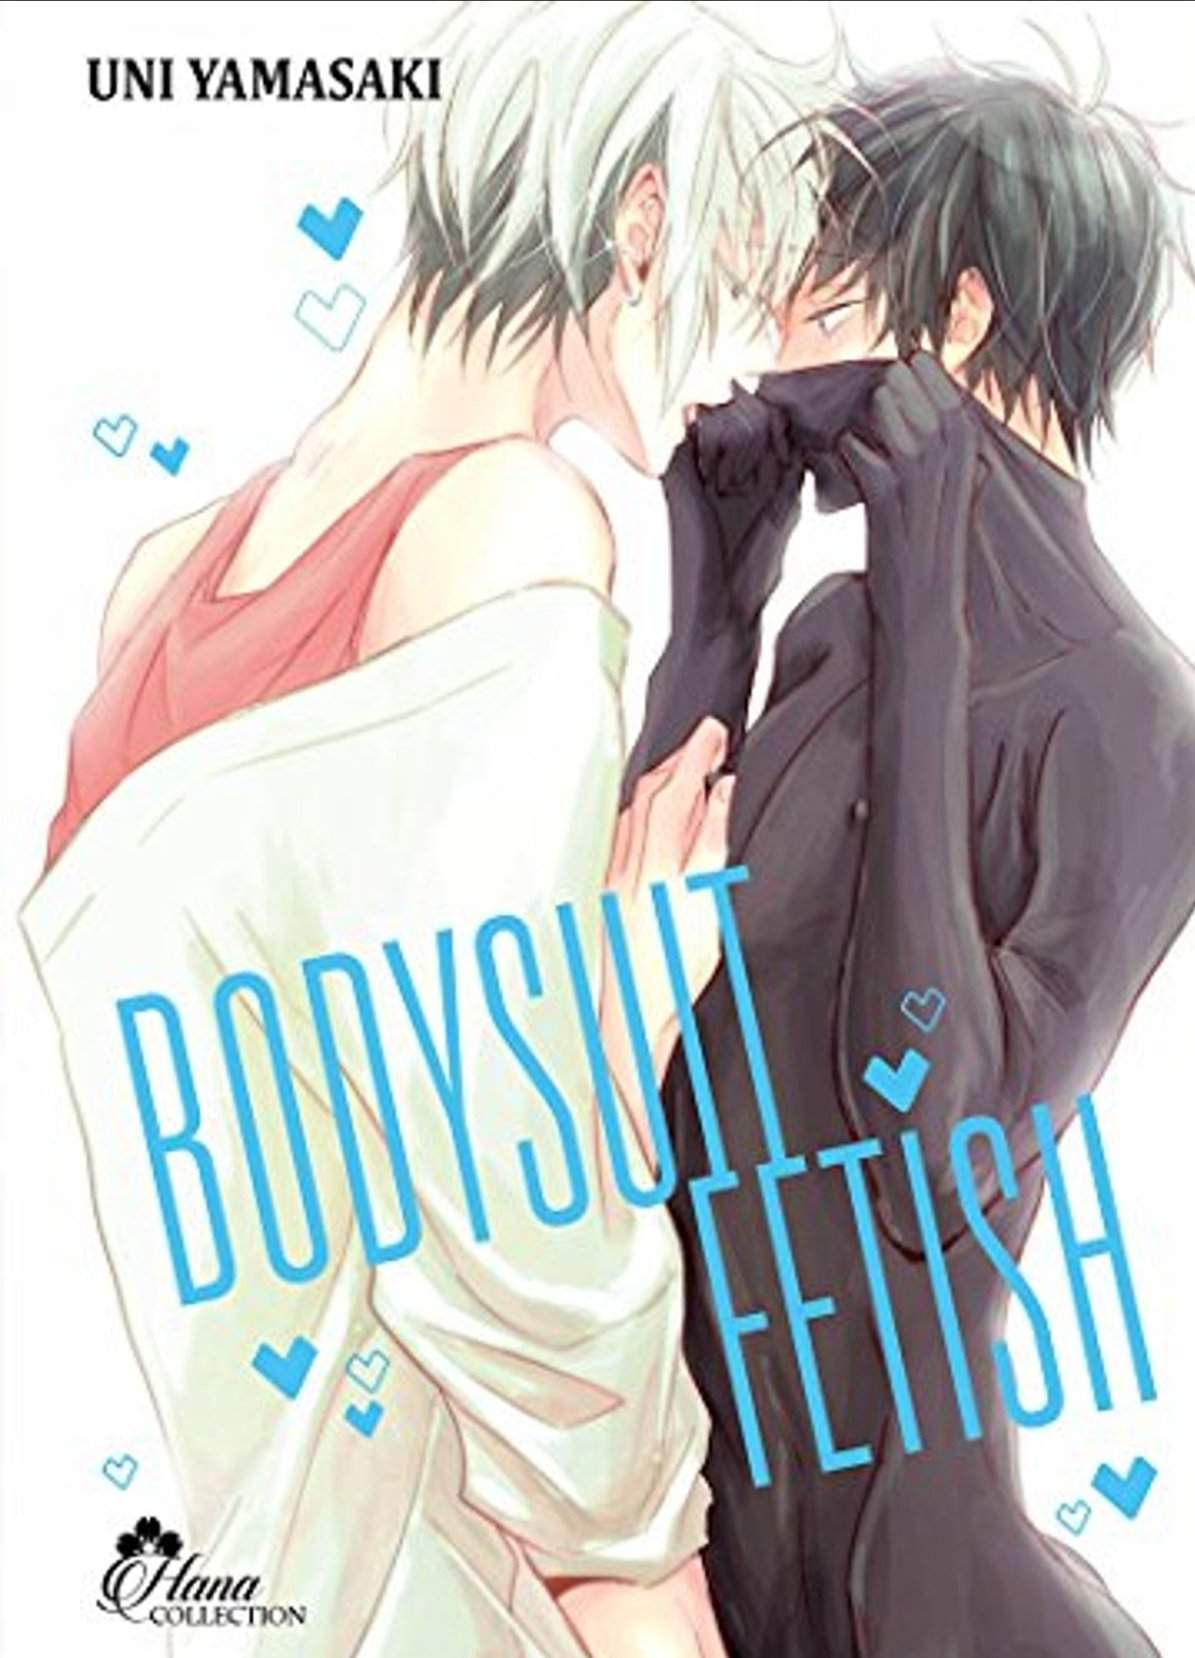 gay anime manga sex